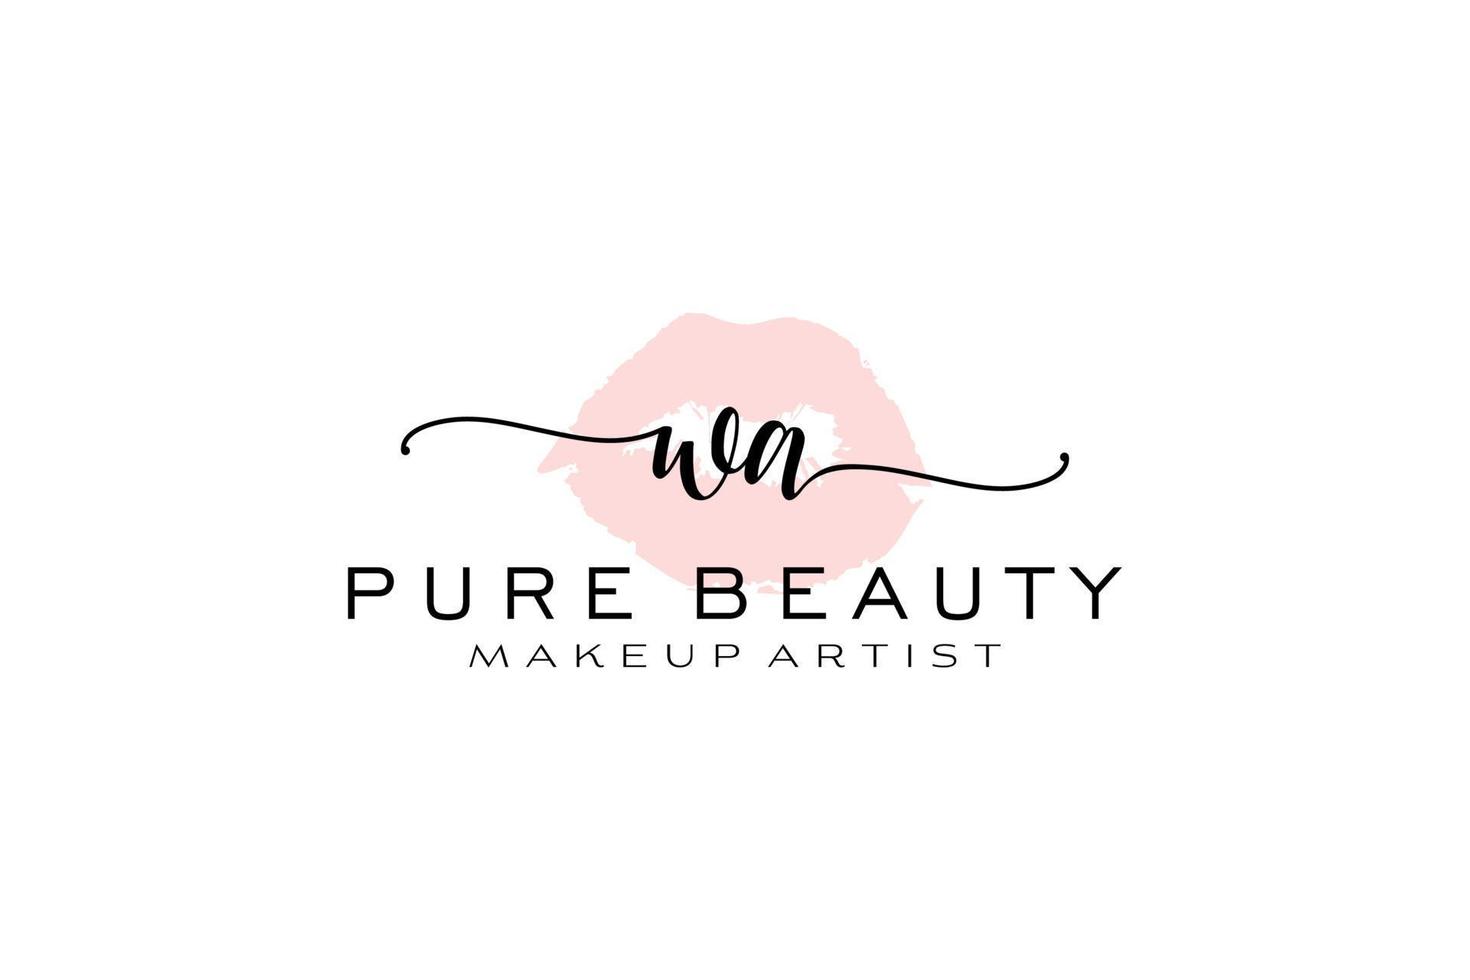 création initiale de logo préfabriqué pour les lèvres aquarelles wa, logo pour la marque d'entreprise de maquilleur, création de logo de boutique de beauté blush, logo de calligraphie avec modèle créatif. vecteur